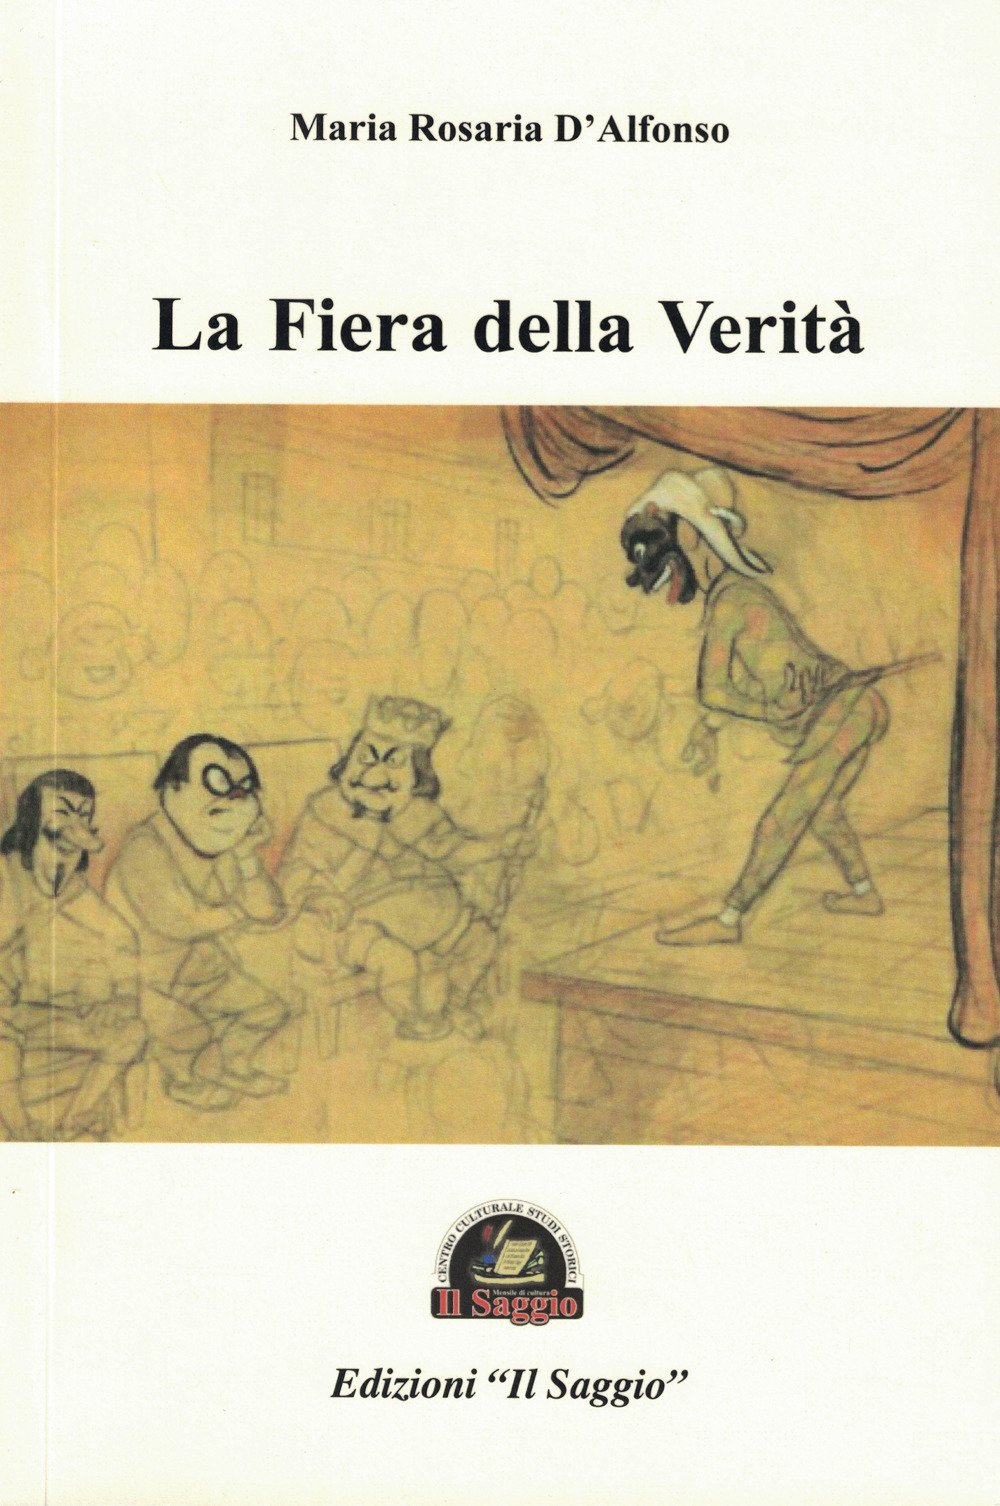 Libri D'Alfonso Maria Rosaria - La Fiera Della Verita NUOVO SIGILLATO, EDIZIONE DEL 01/01/2019 SUBITO DISPONIBILE